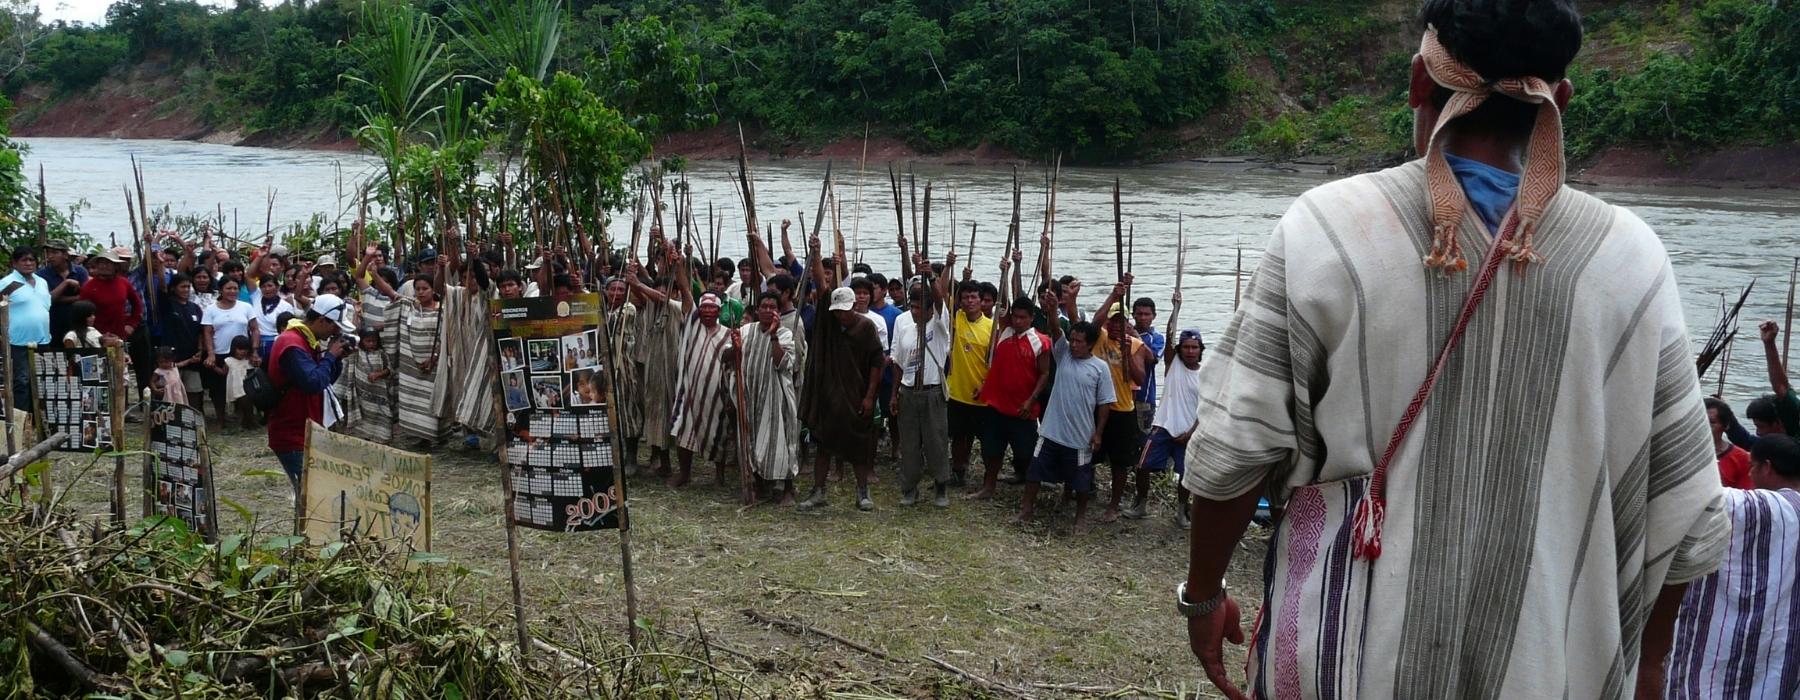 AMAZONAS-UREINWOHNER VON MANU NATIONALPARK